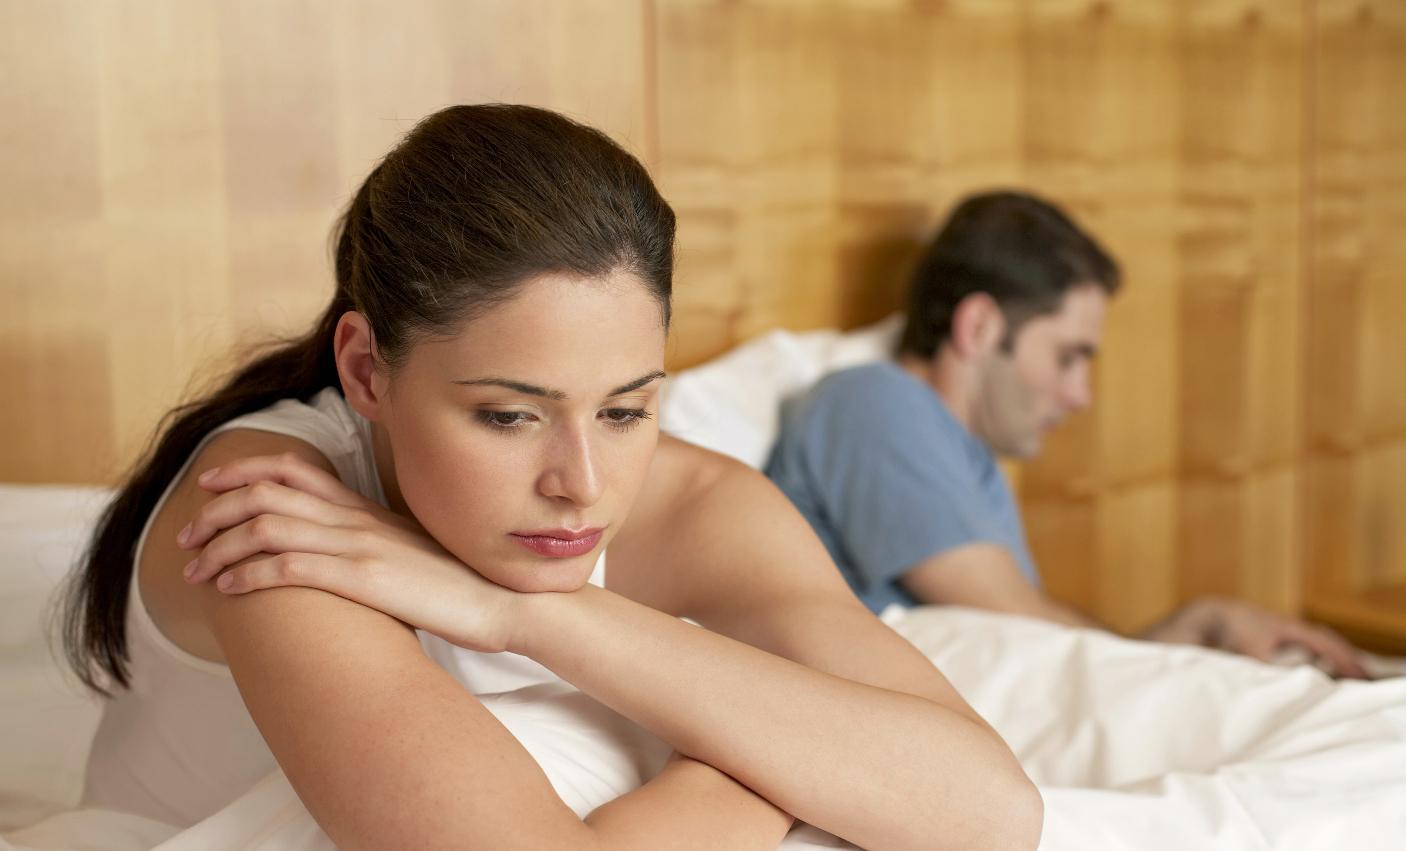   Chồng không thích một cô vợ quá khép kín trên... giường ngủ, ảnh hưởng đến hạnh phúc gia đình  